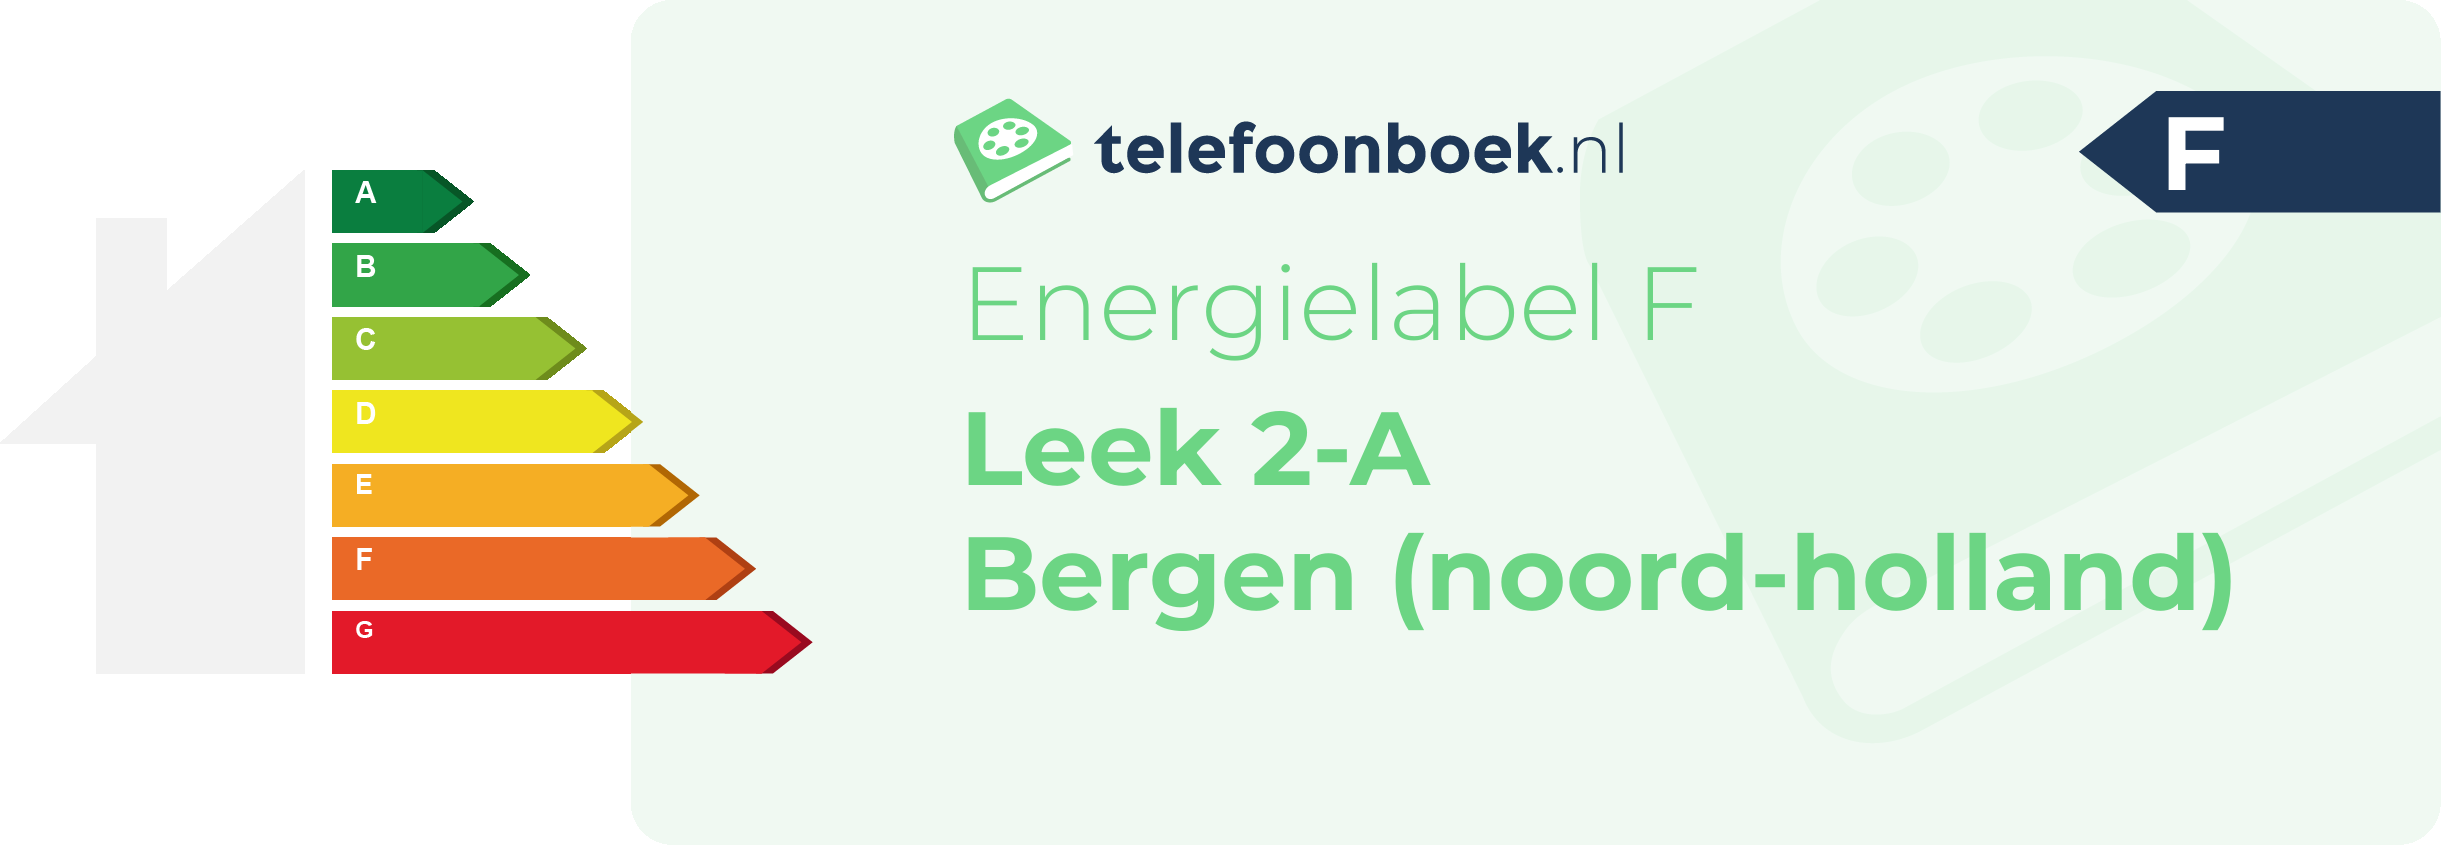 Energielabel Leek 2-A Bergen (Noord-Holland)